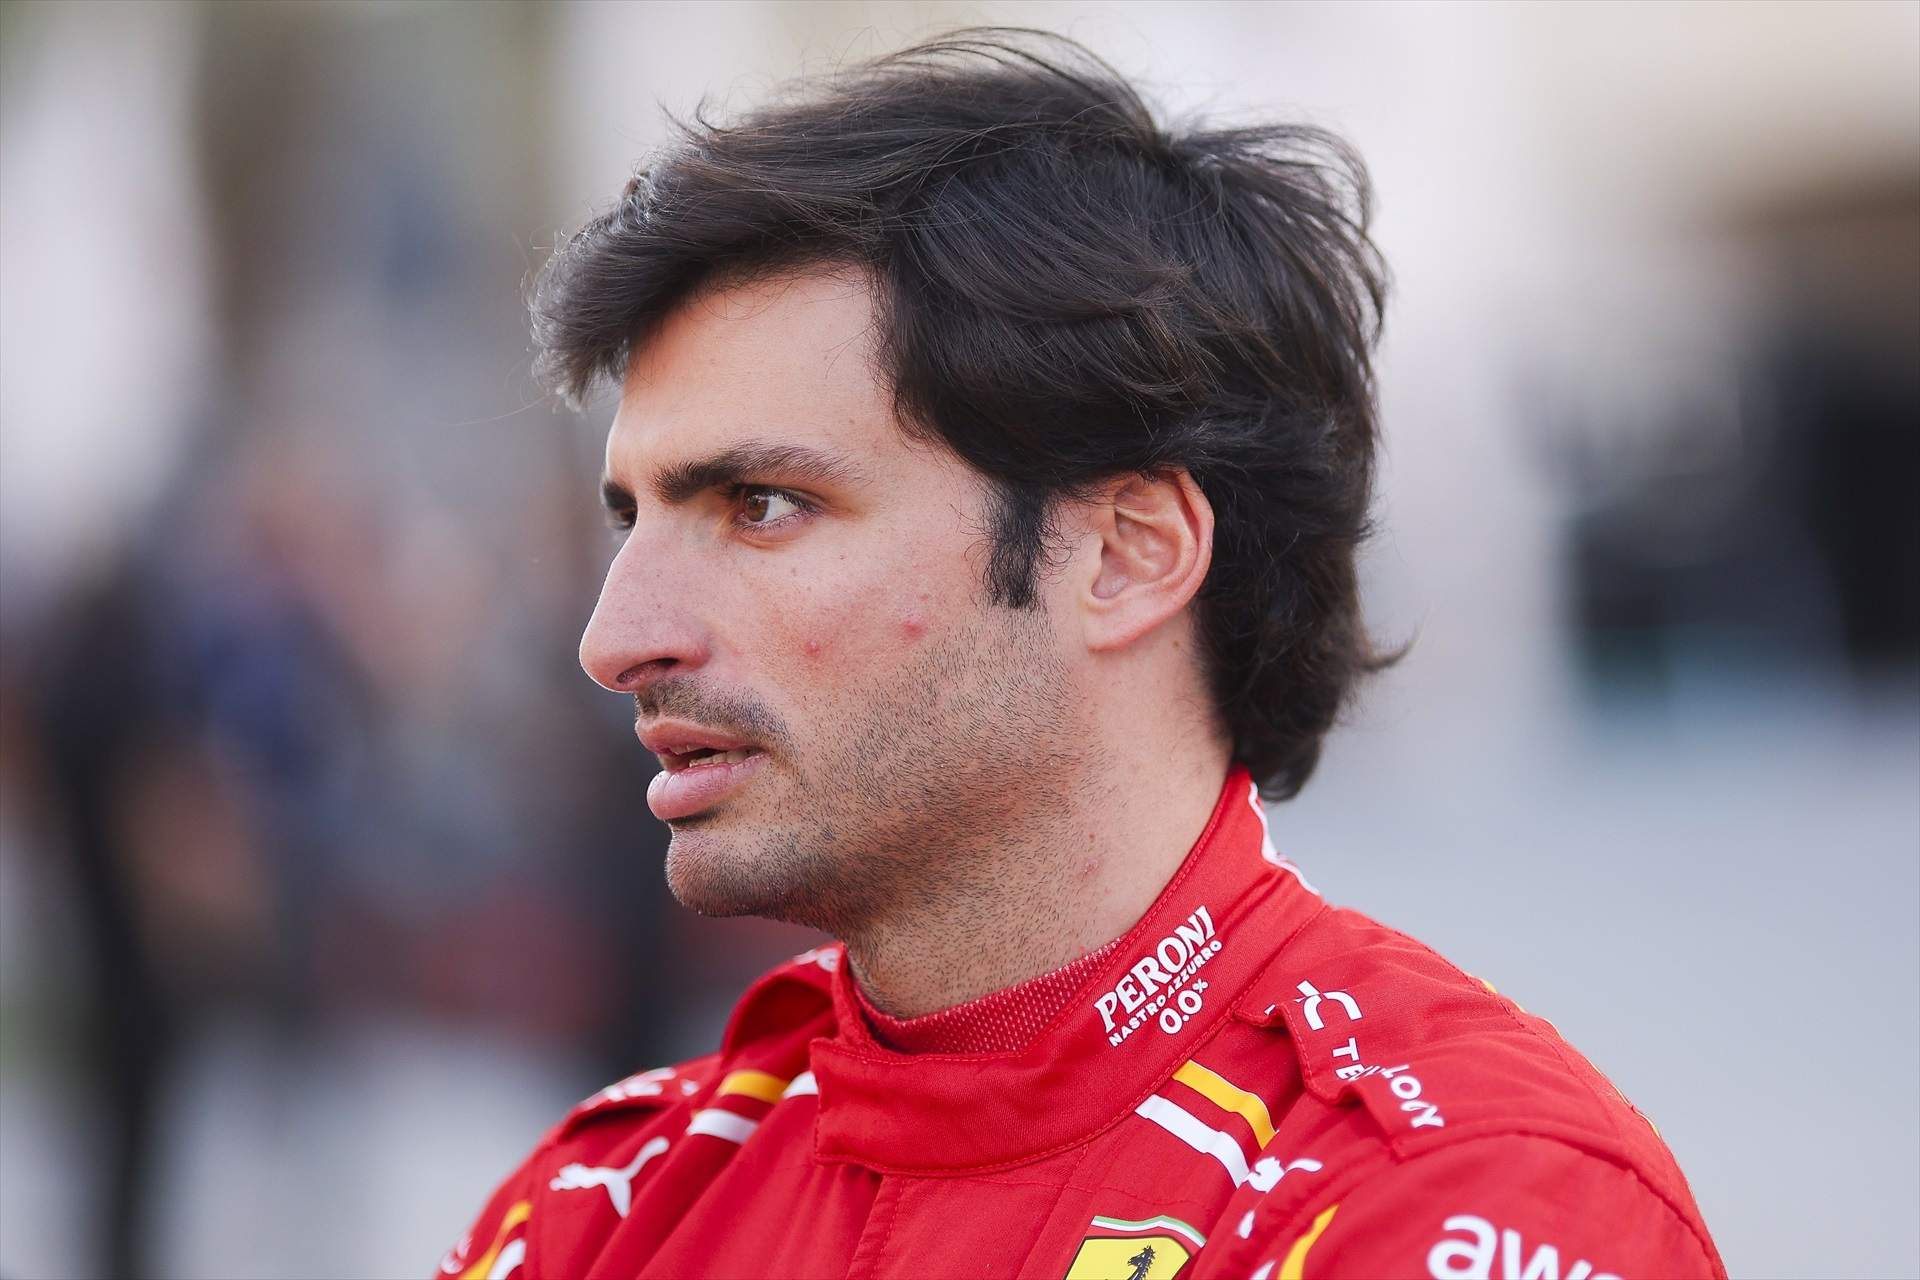 2 de las 3 opciones descartan a Carlos Sainz y le queda 1 después de Ferrari